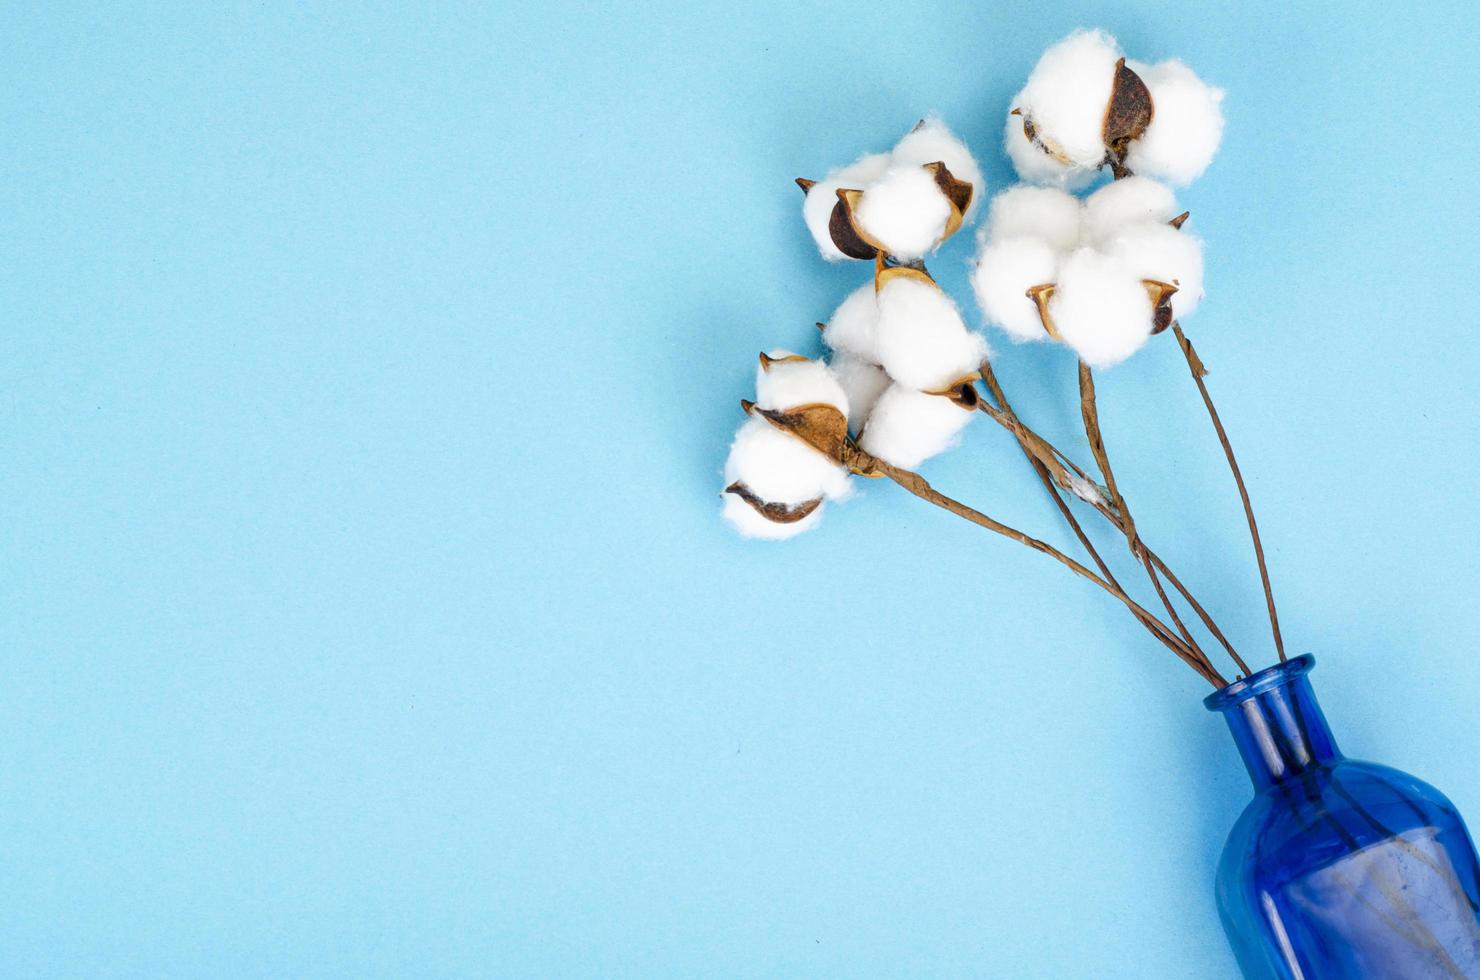 délicates fleurs de coton blanc moelleux sur fond de papier bleu pastel, vue de dessus. fibre organique naturelle, matières premières pour la fabrication de tissus. photographie de studio photo